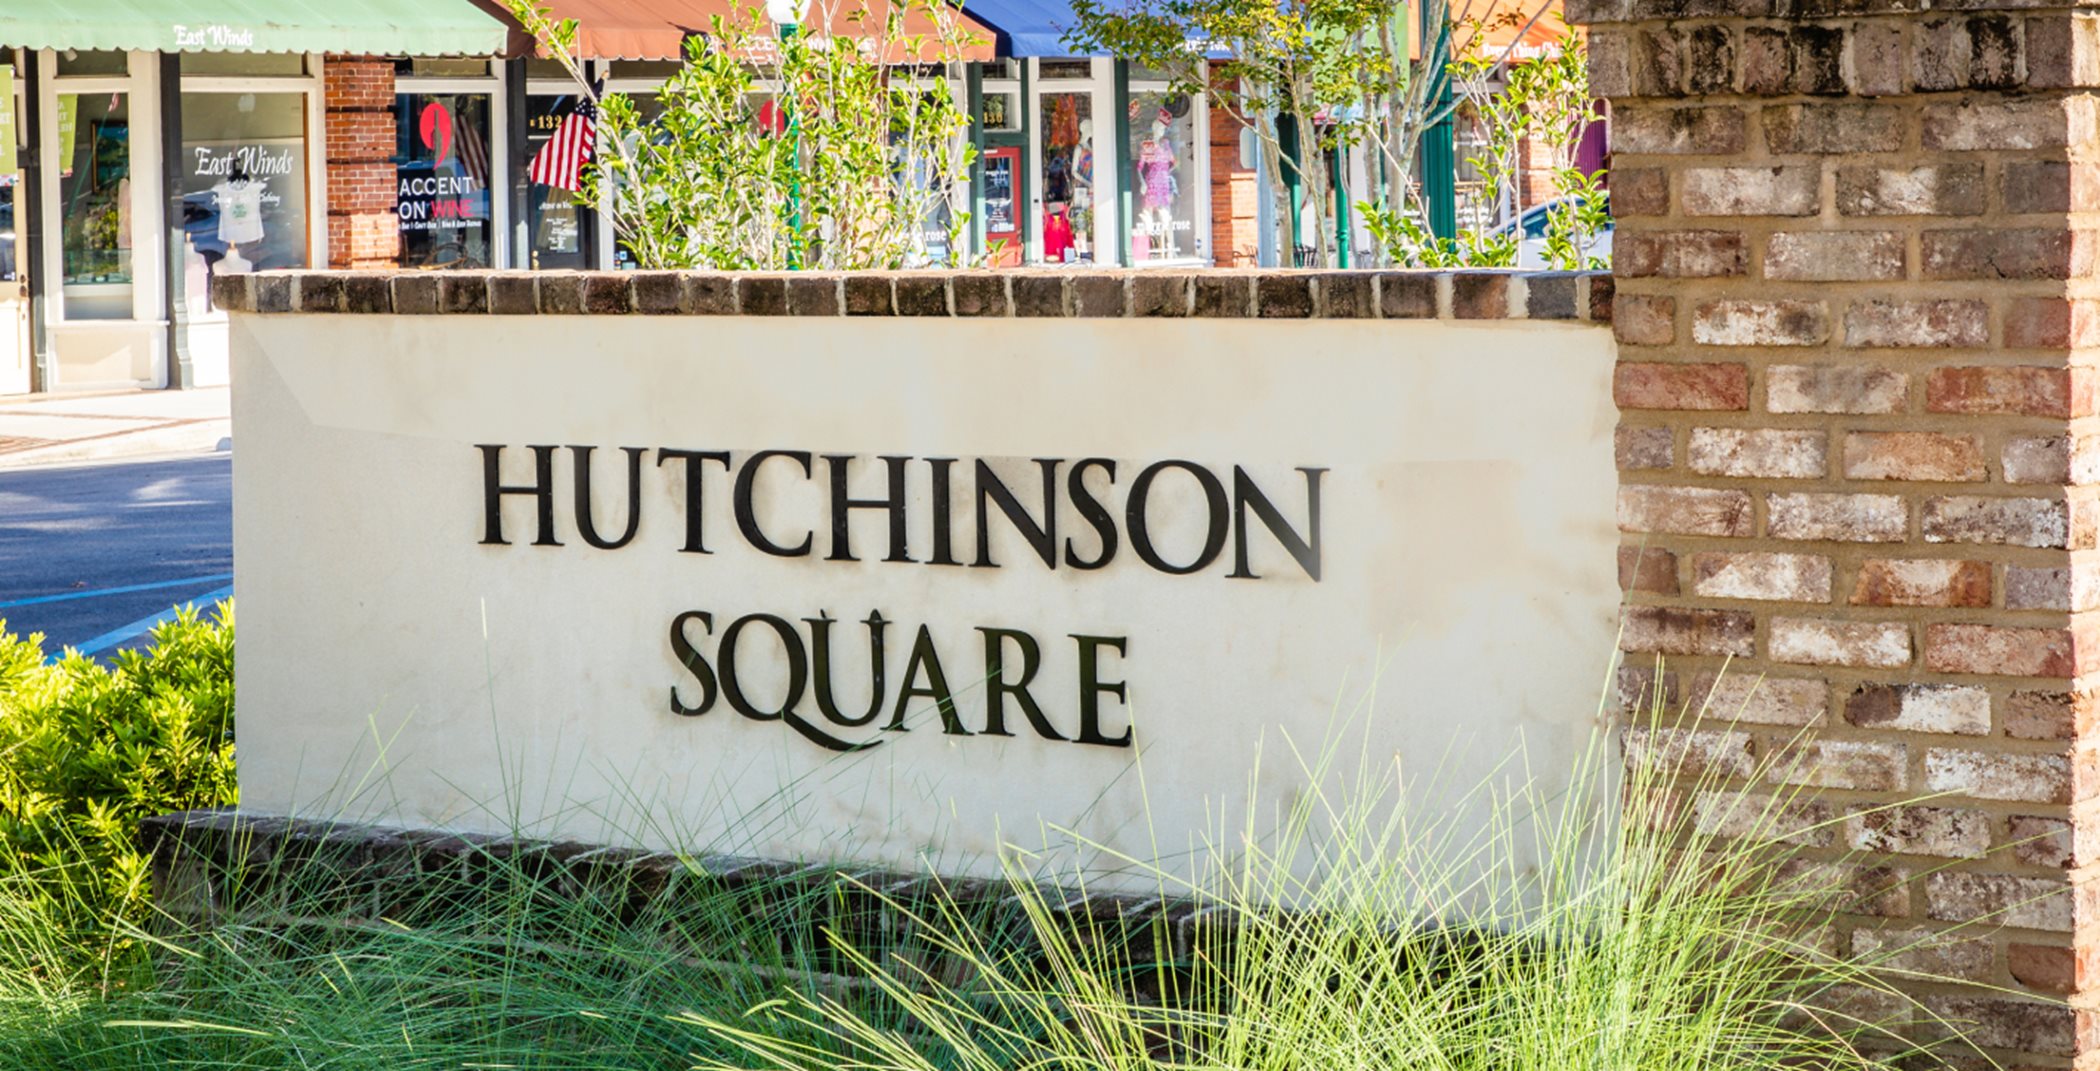 Hutchinson Square